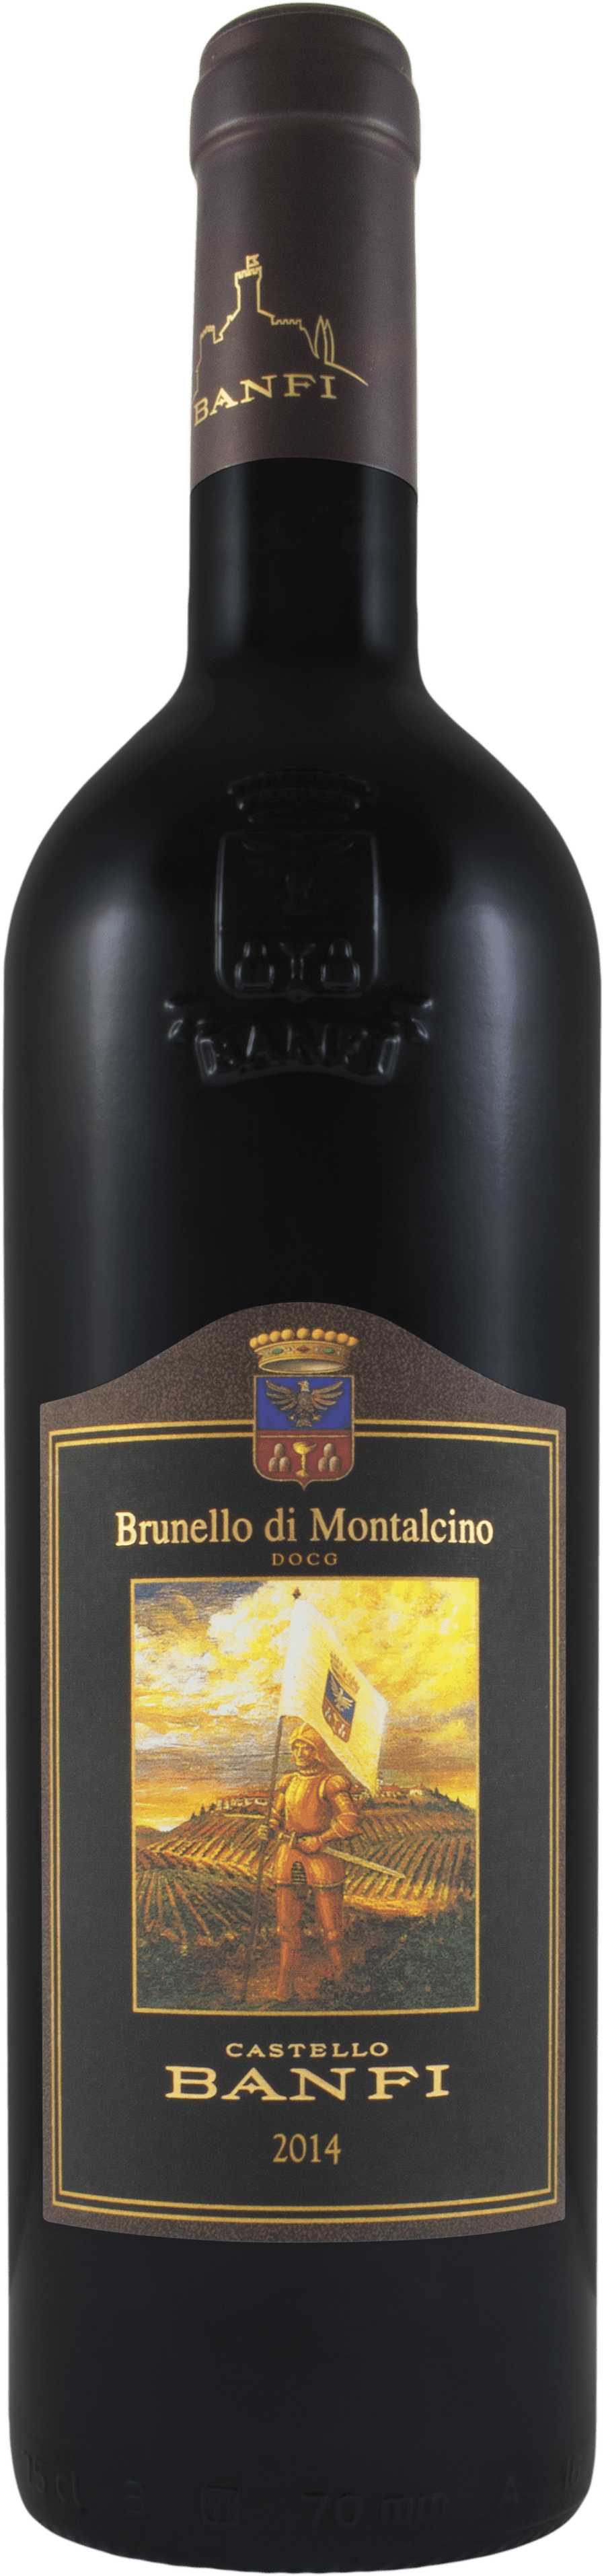 2014 Banfi Brunello Di Montalcino